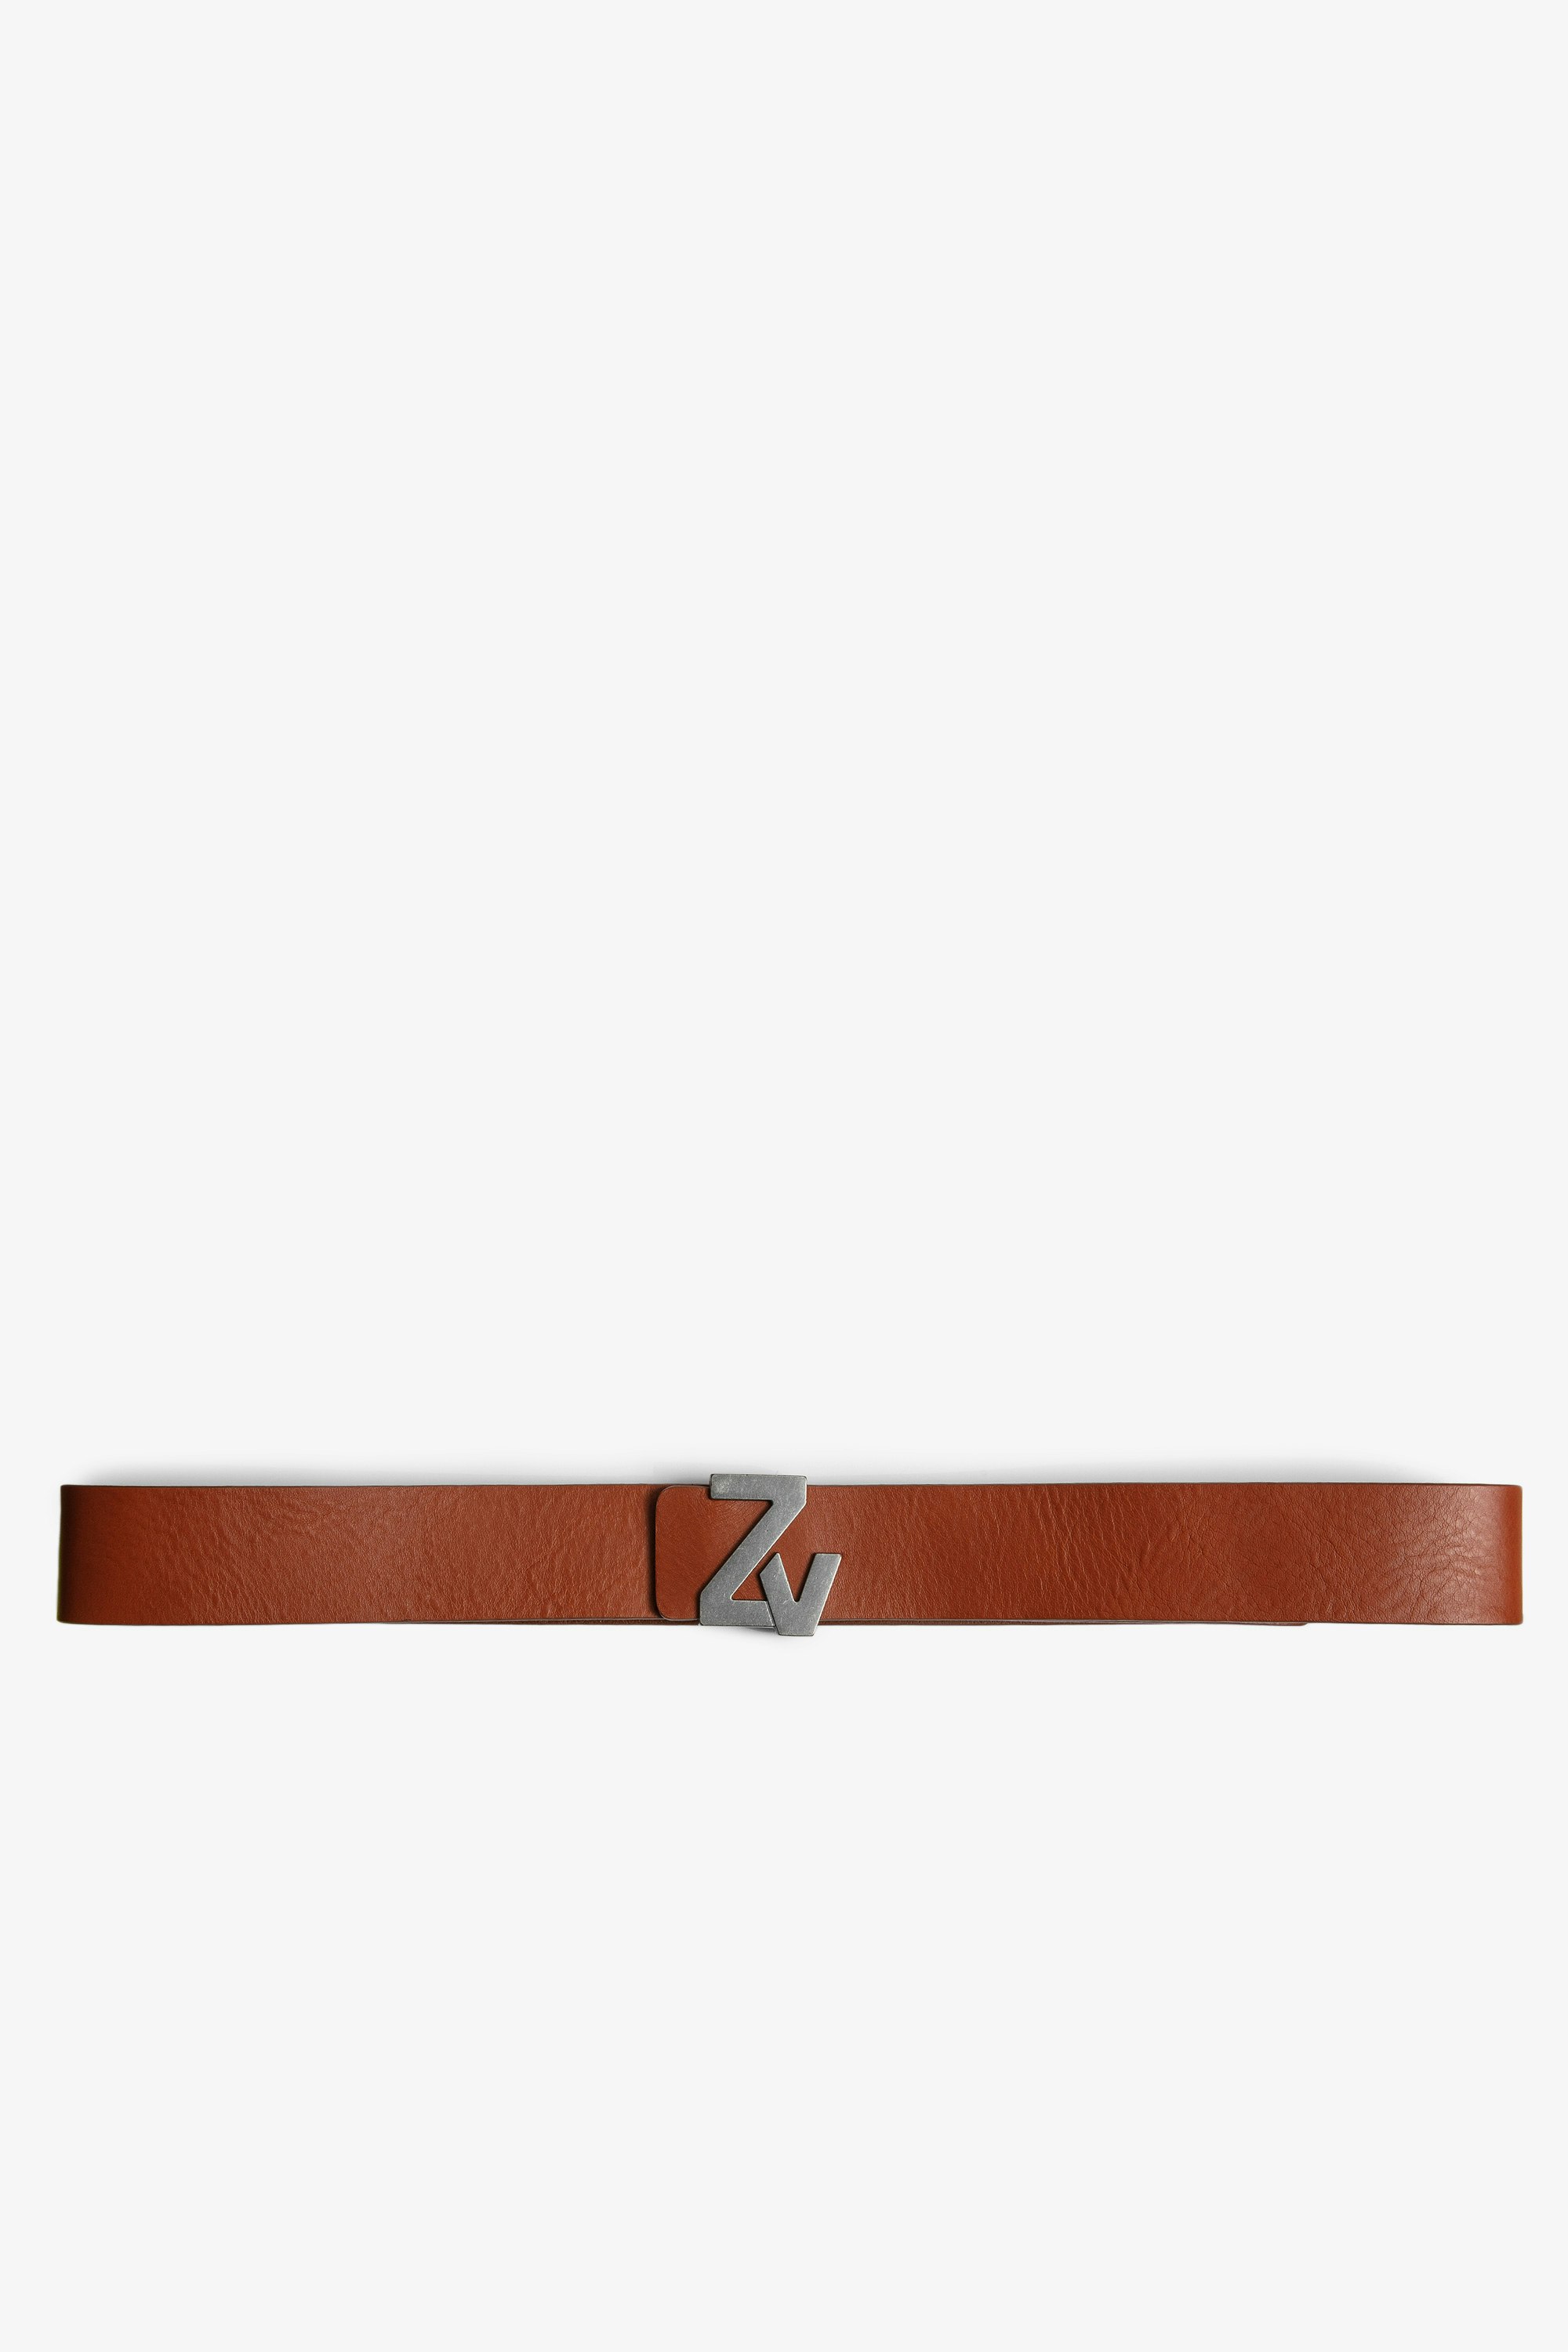 ZV Initiale La ベルト レザー - Men's cognac leather belt with ZV buckle